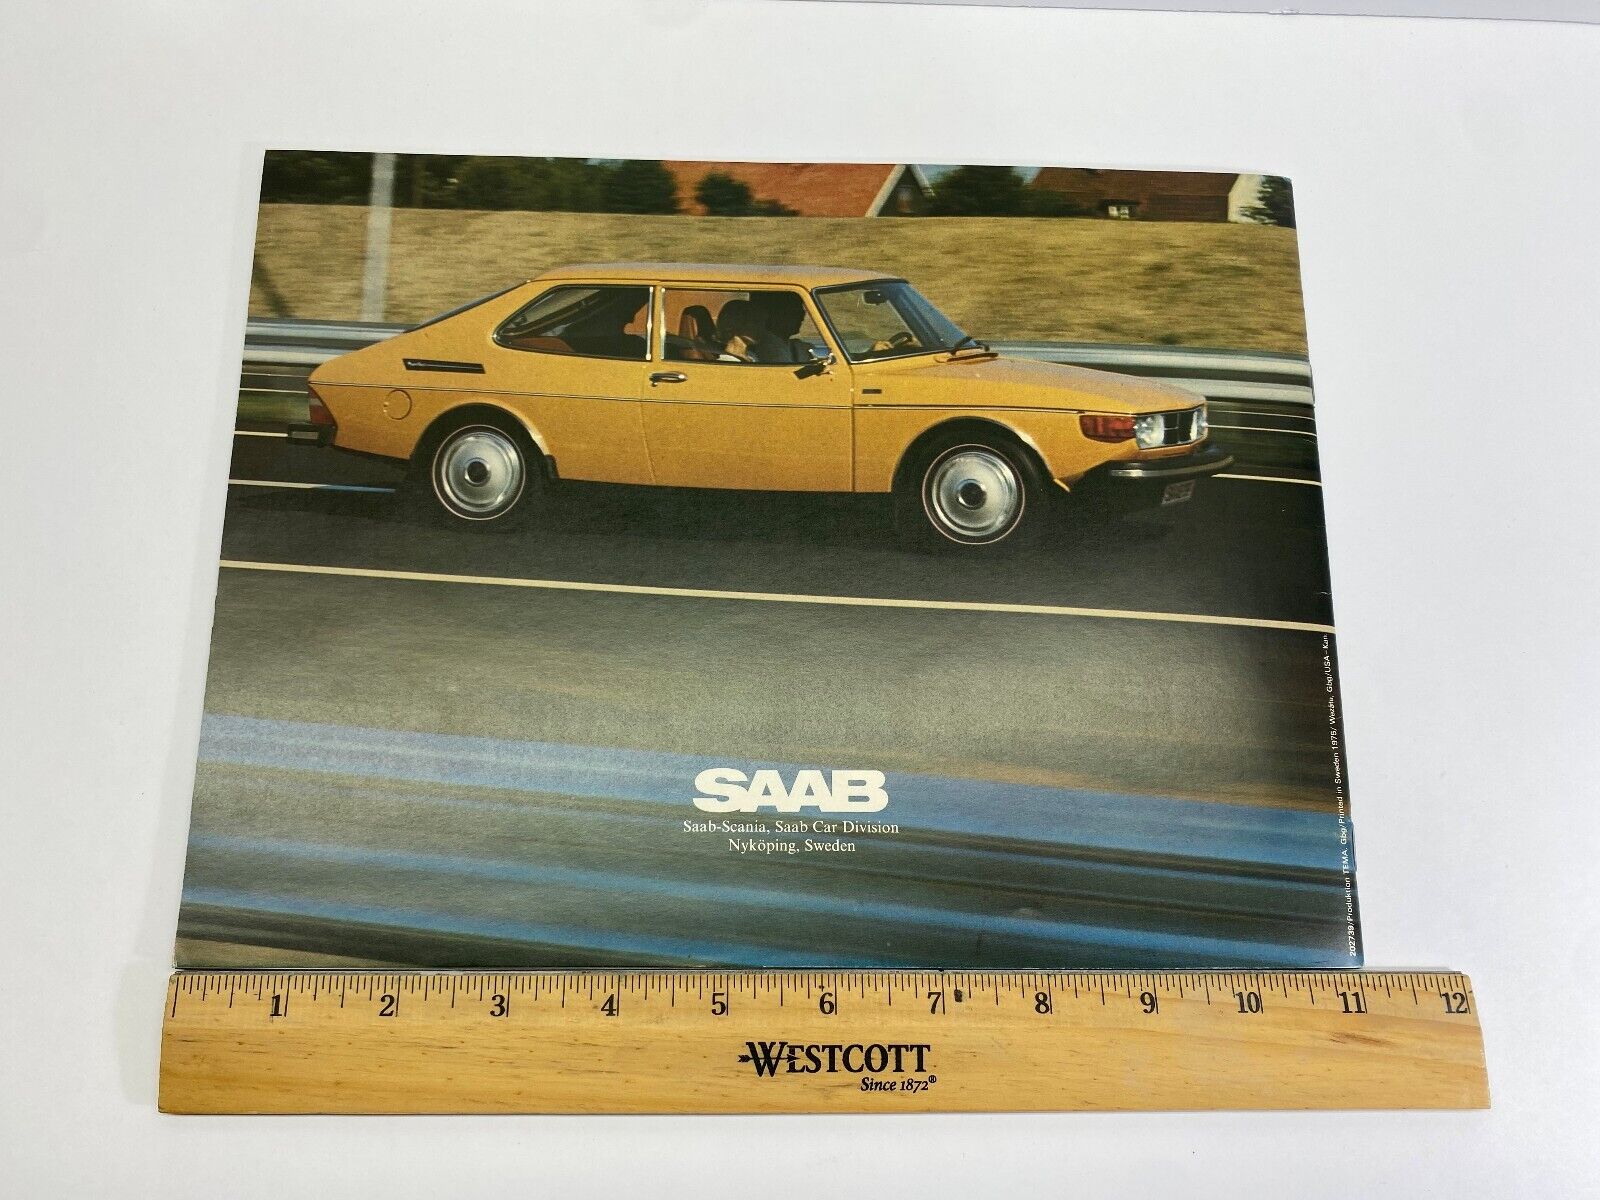 SAAB 1975 Dealer Catalog 99 GL Sedan, 99 GL WagonBack 99 EMS New Condition NoRes Без бренда - фотография #8